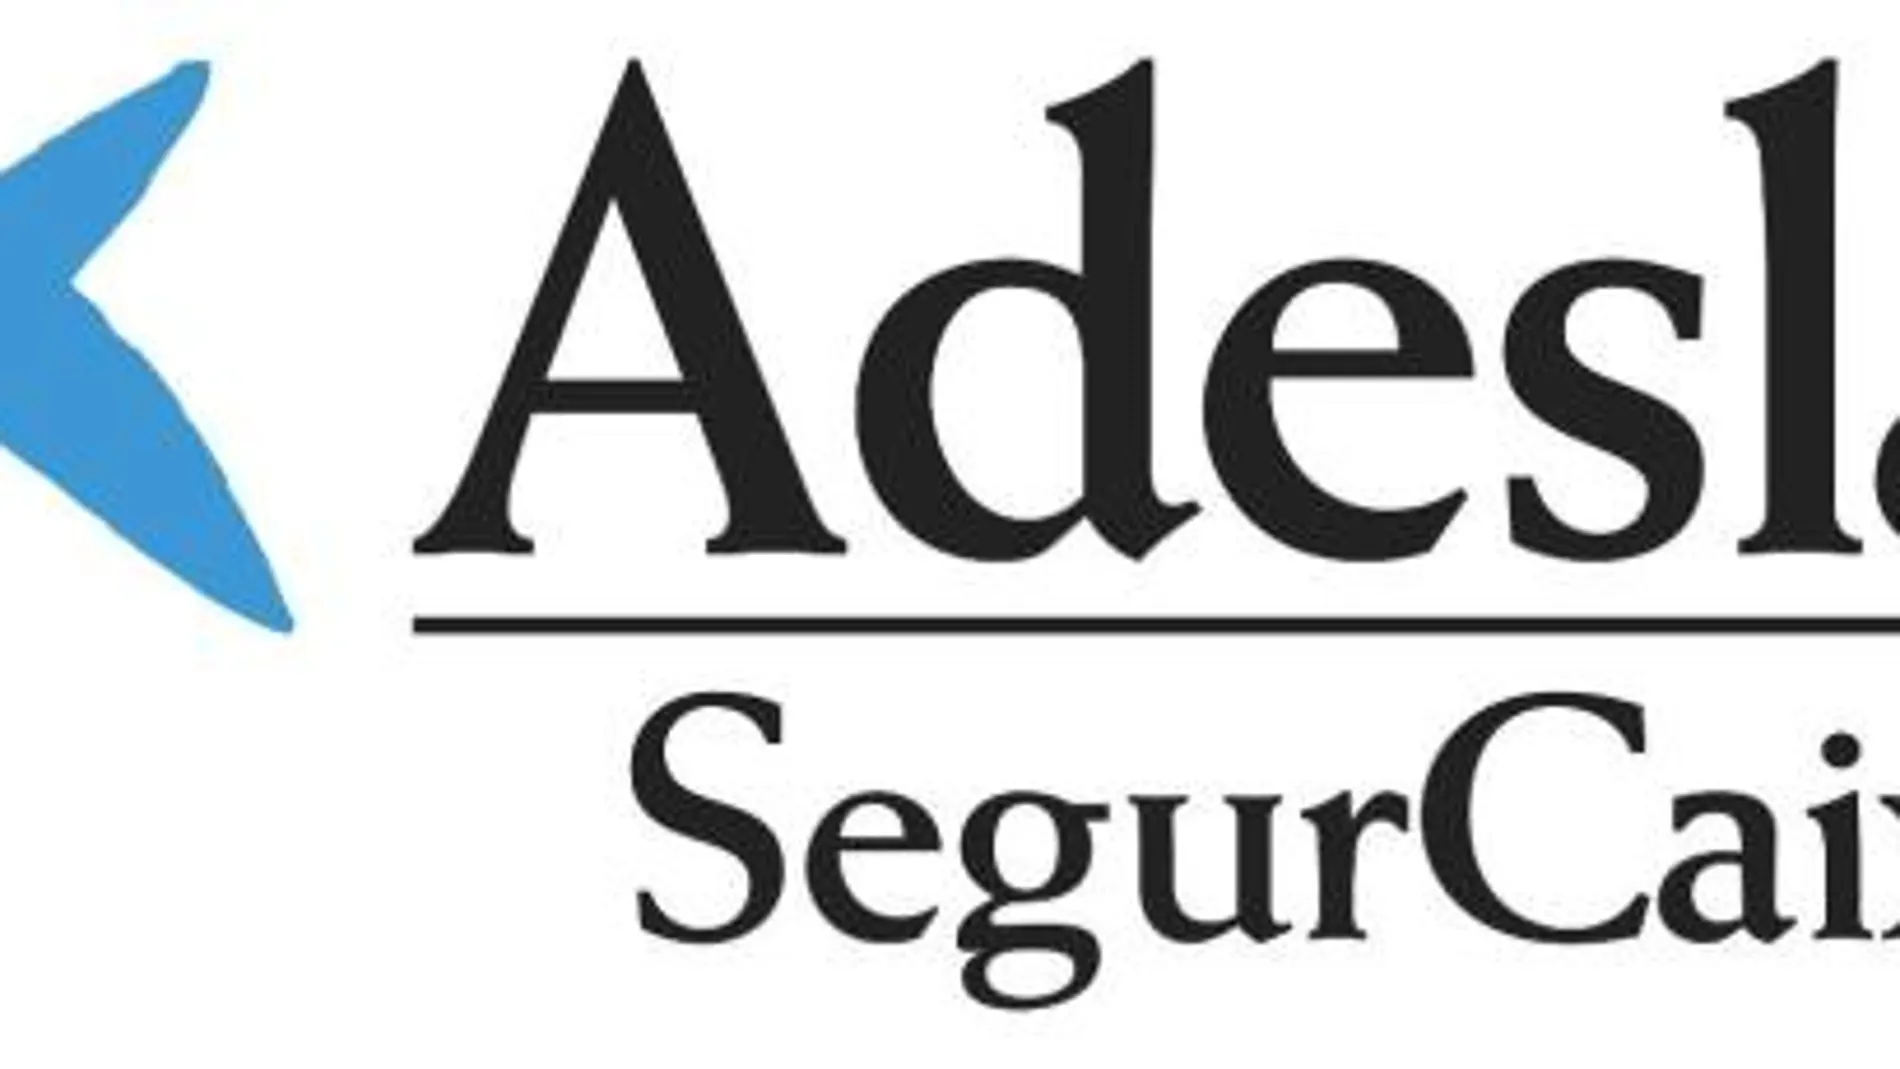 SegurCaixa Adeslas ganó 314 millones en 2017, un 23,3% más